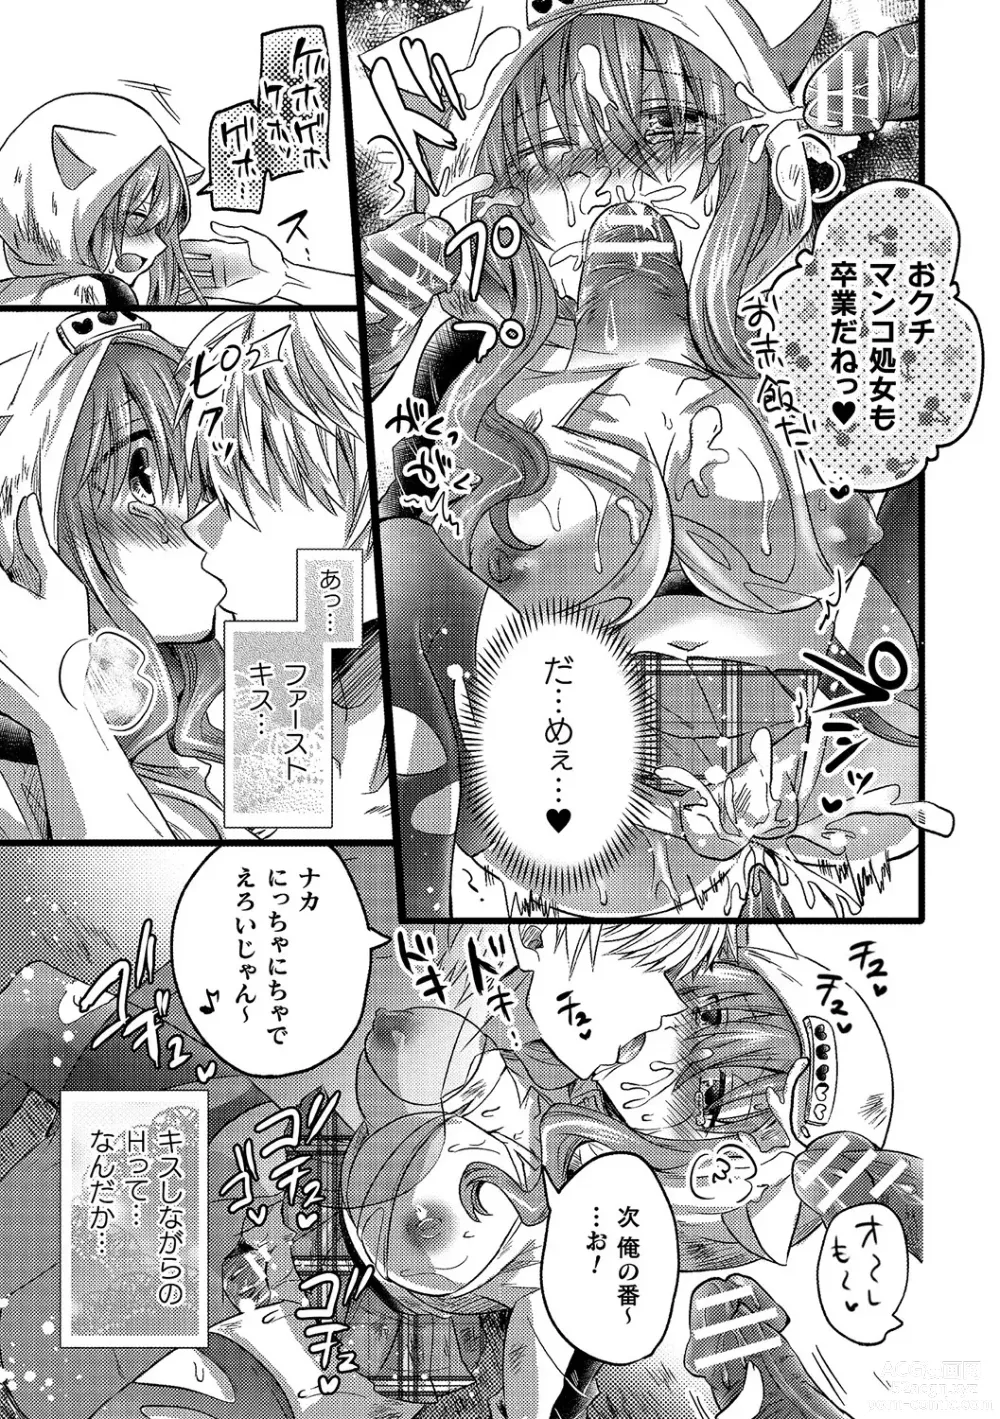 Page 81 of manga Bessatsu Comic Unreal AI ni Wakaraserareru Jinrui Hen Vol. 2